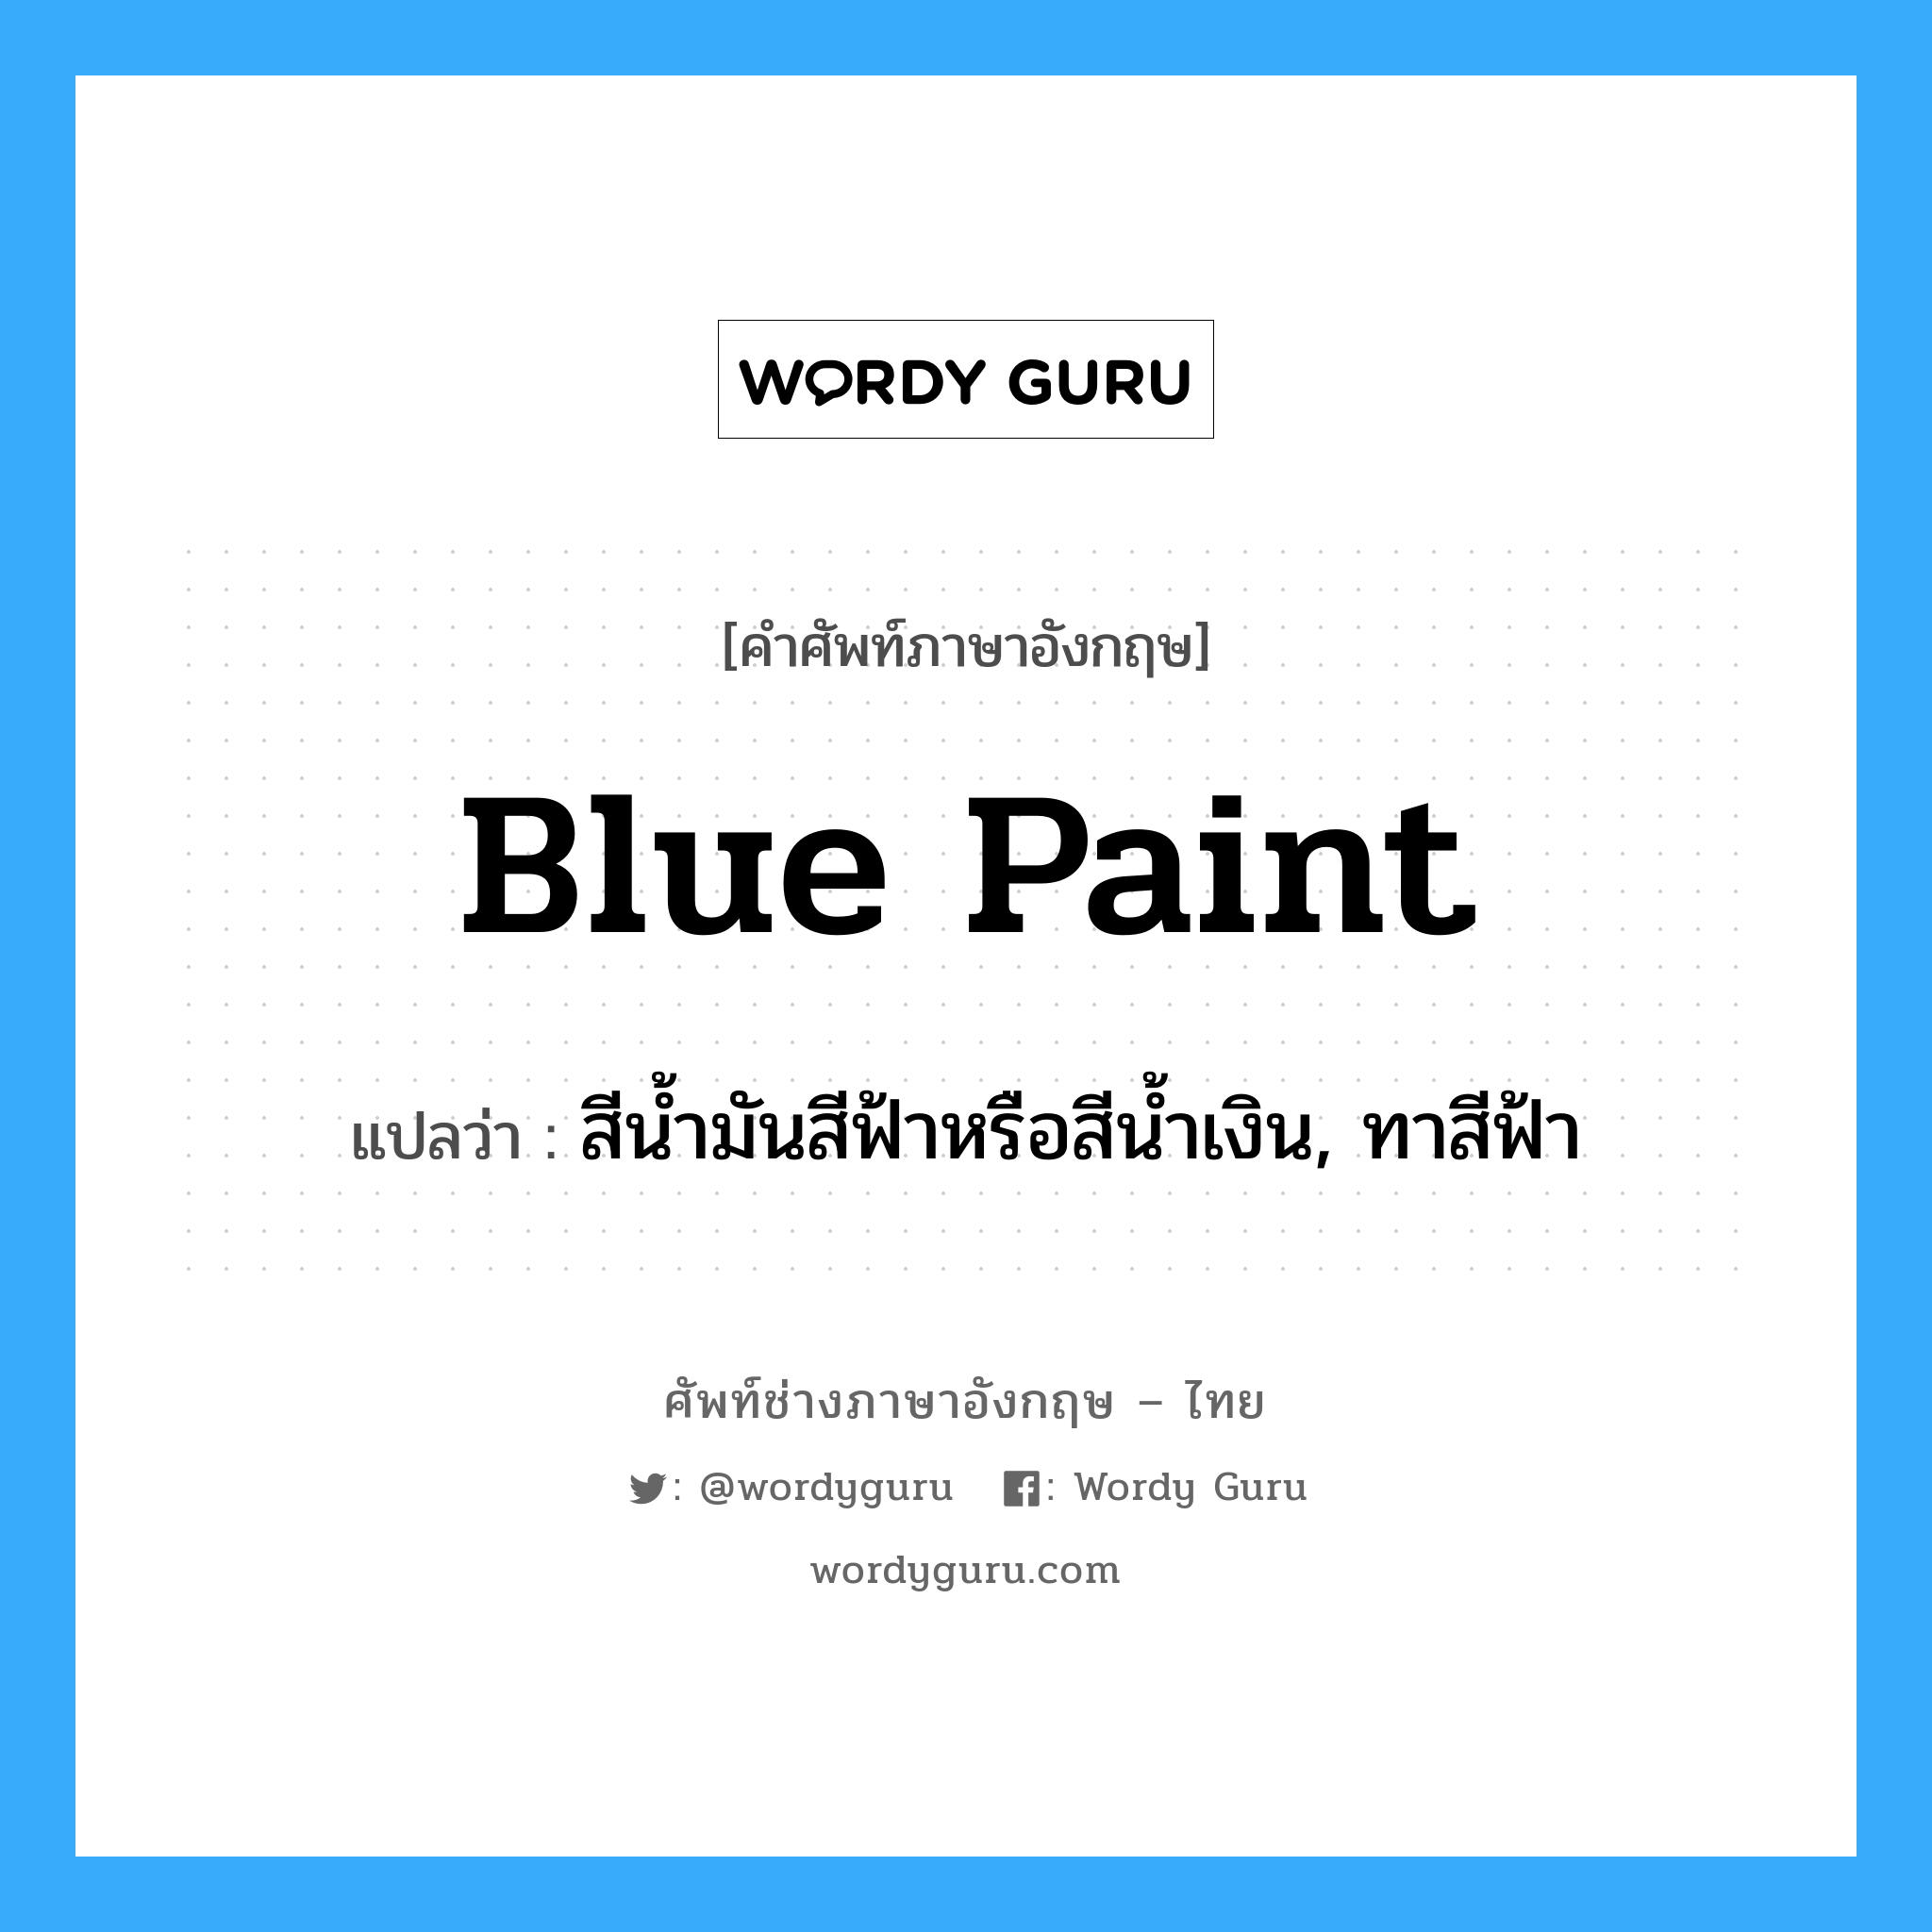 สีน้ำมันสีฟ้าหรือสีน้ำเงิน, ทาสีฟ้า ภาษาอังกฤษ? | Wordy Guru